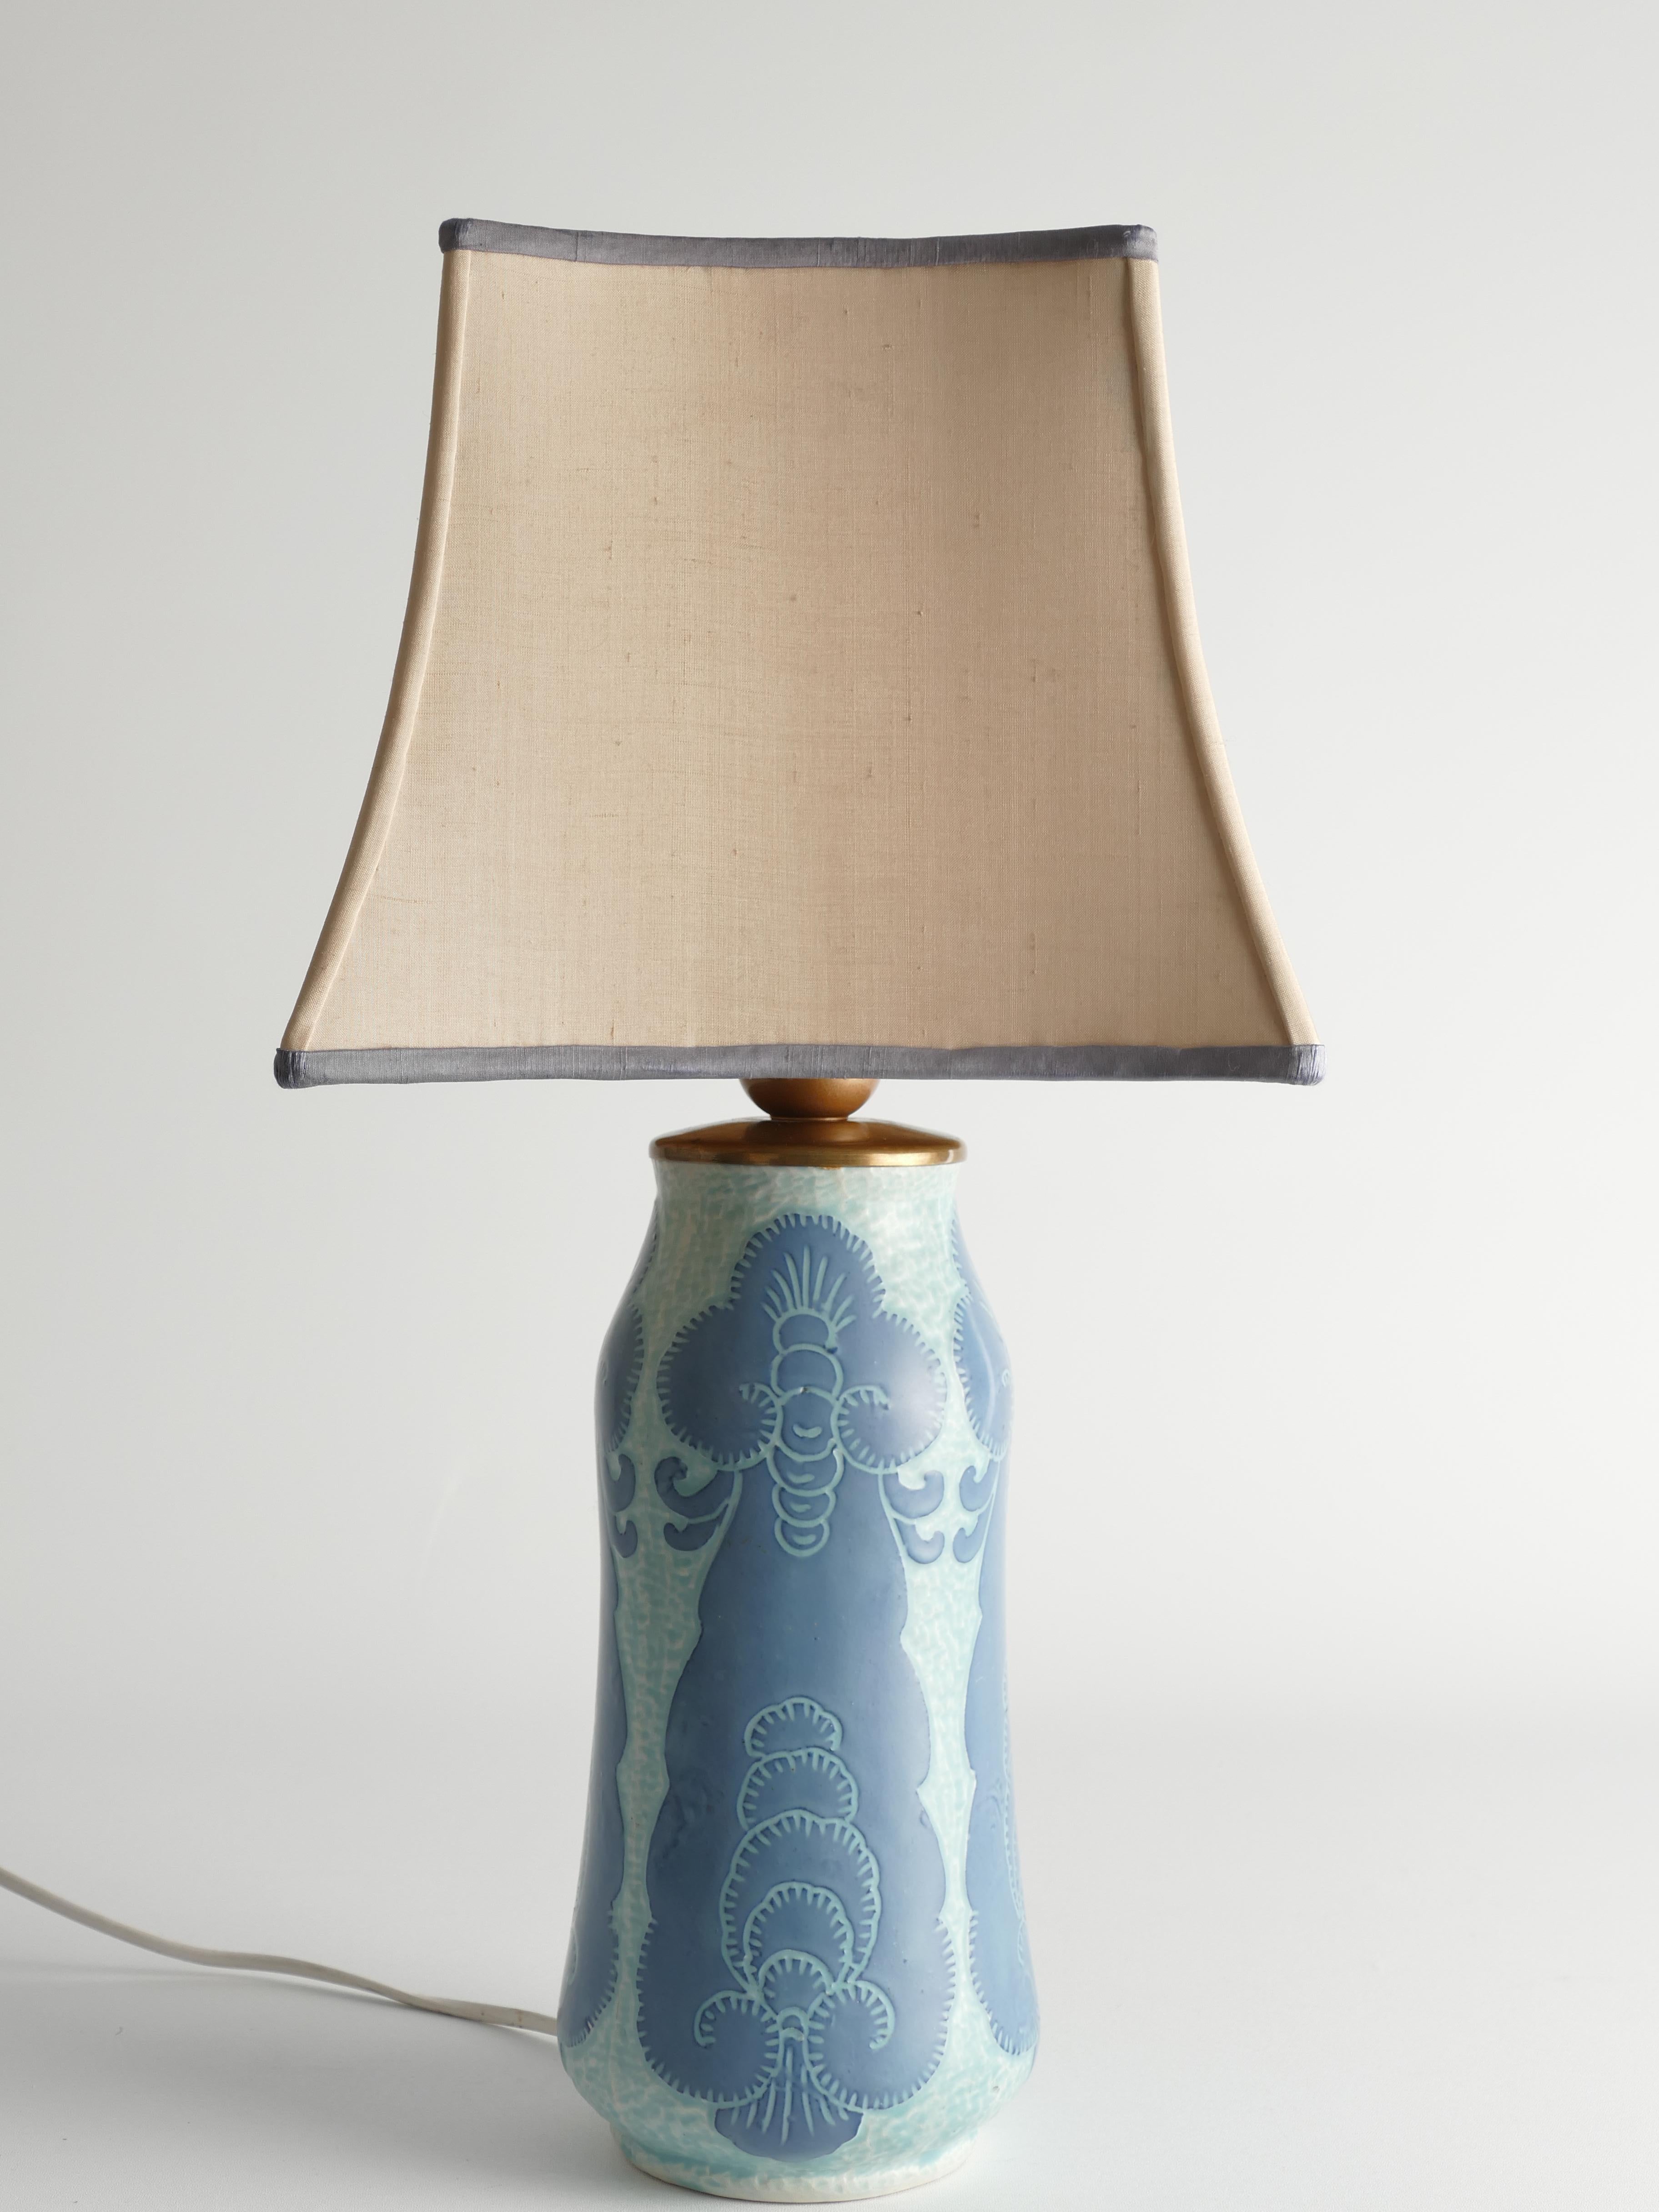 Unique Art Nouveau Pale Blue Ceramic Table Lamp by Josef Ekberg for Gustavsberg For Sale 3